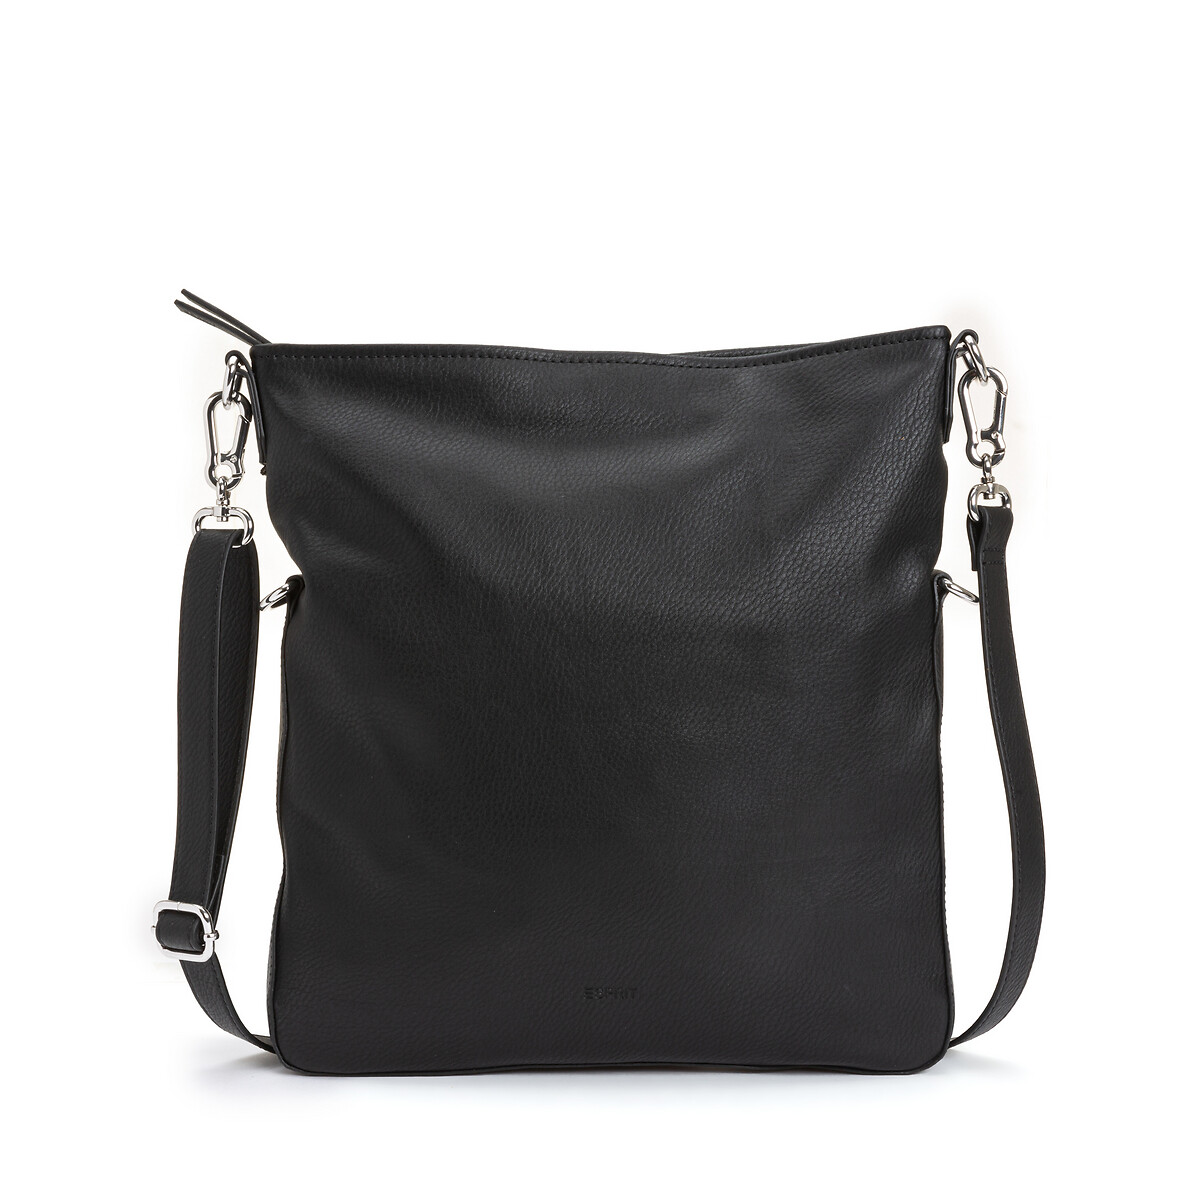 Crossbody handbag Esprit | La Redoute